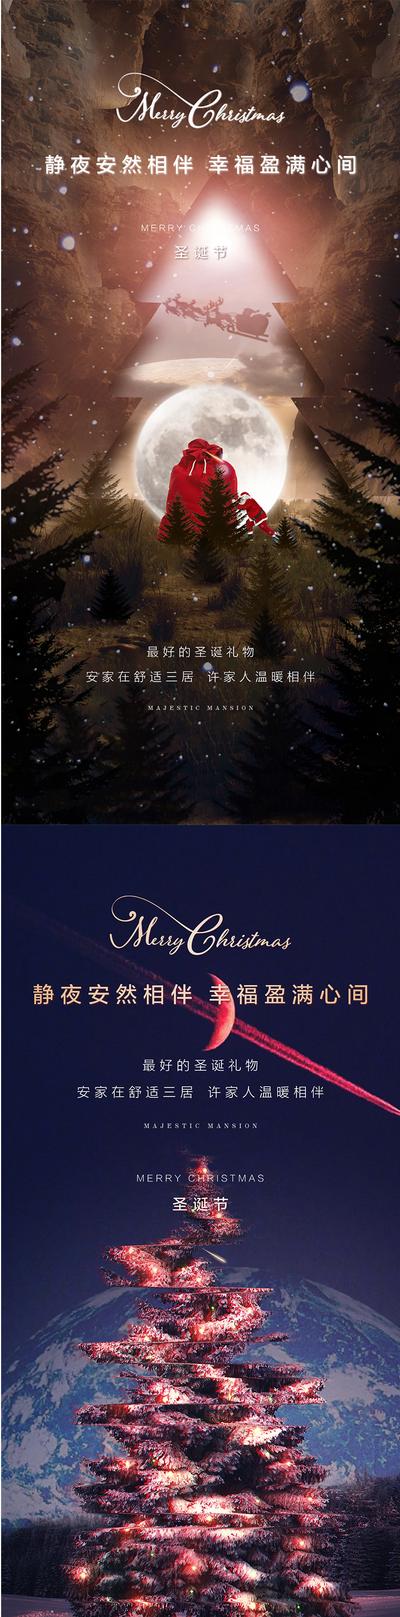 南门网 海报 地产 公历节日 圣诞节 平安夜 圣诞树 简约